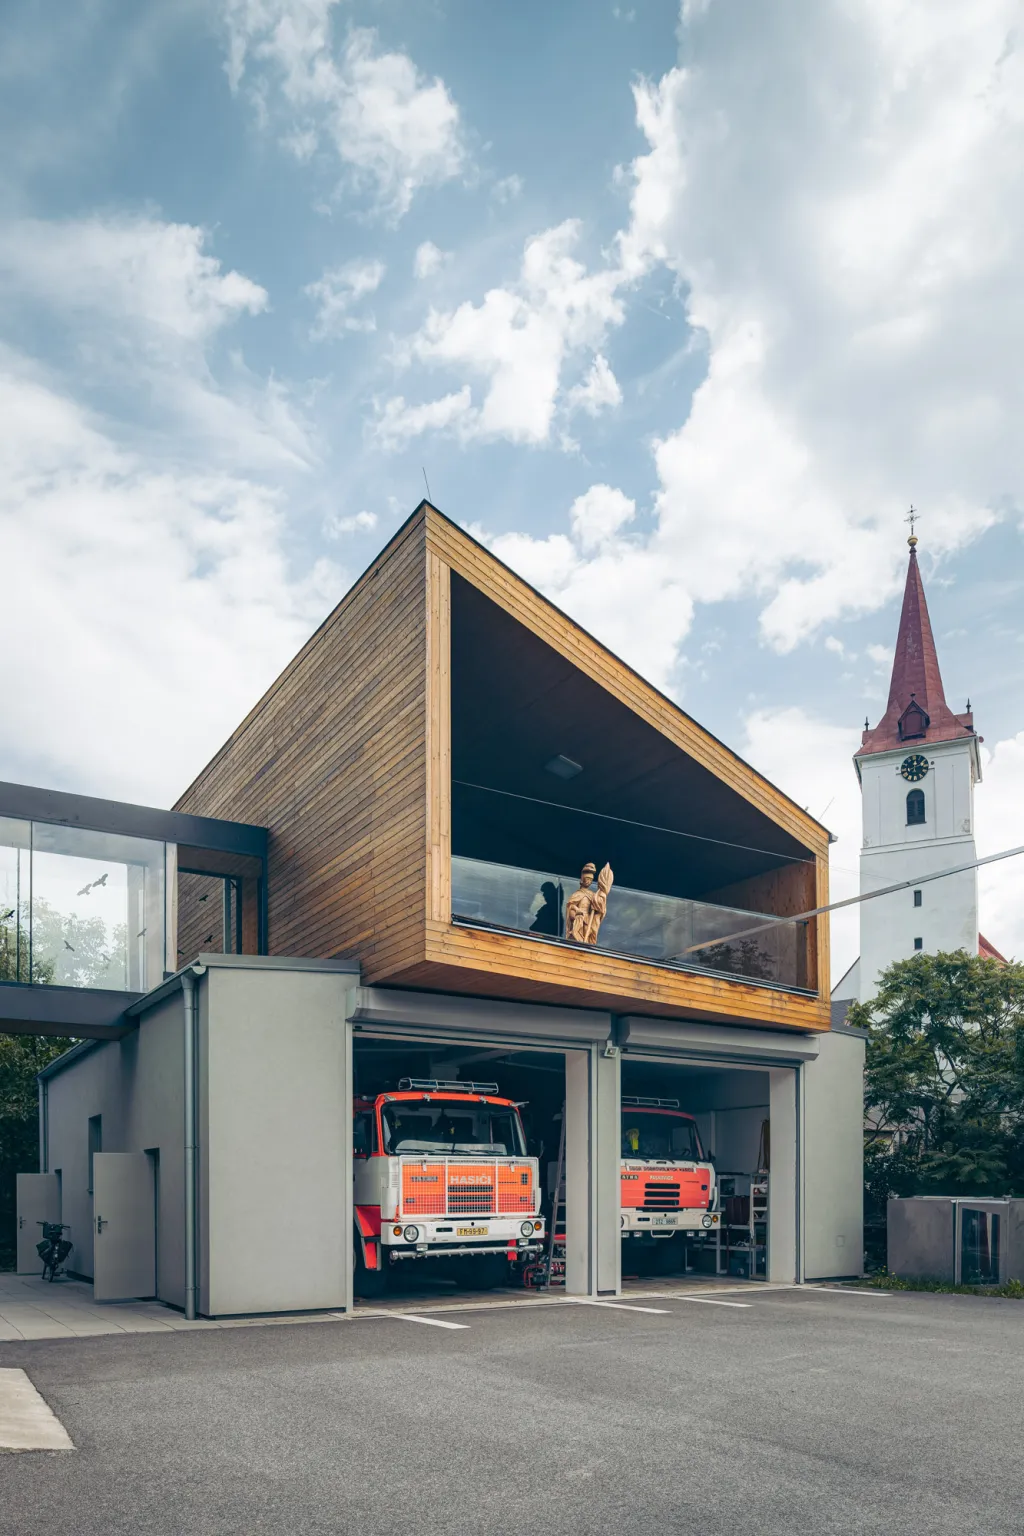 Rekonstrukce budovy hasičárny v obci Palkovice v okrese Frýdek-Místek. Na obnově budovy se podílel beskydský architekt Kamil Mrva